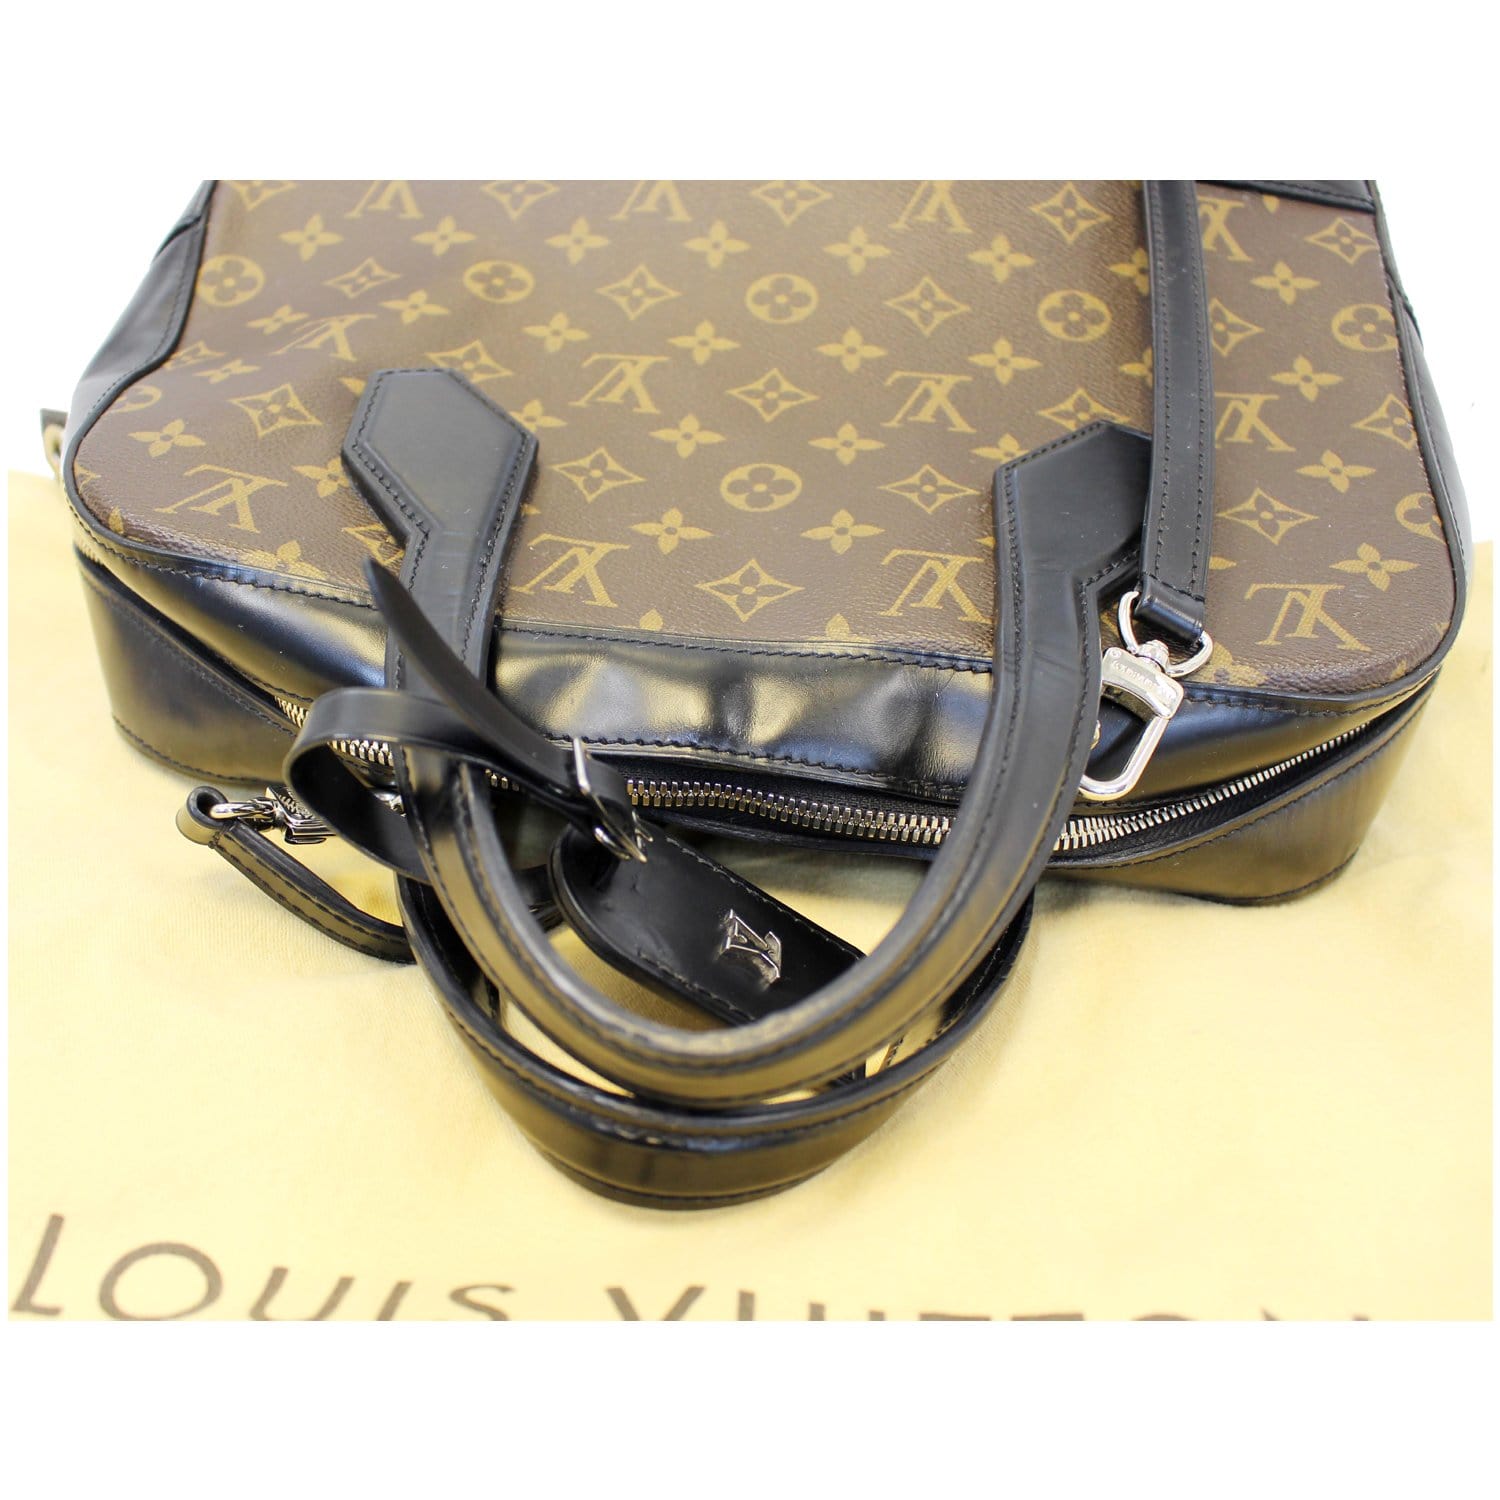 LOUIS VUITTON, Dora, handbag/shoulder bag in monogram canvas